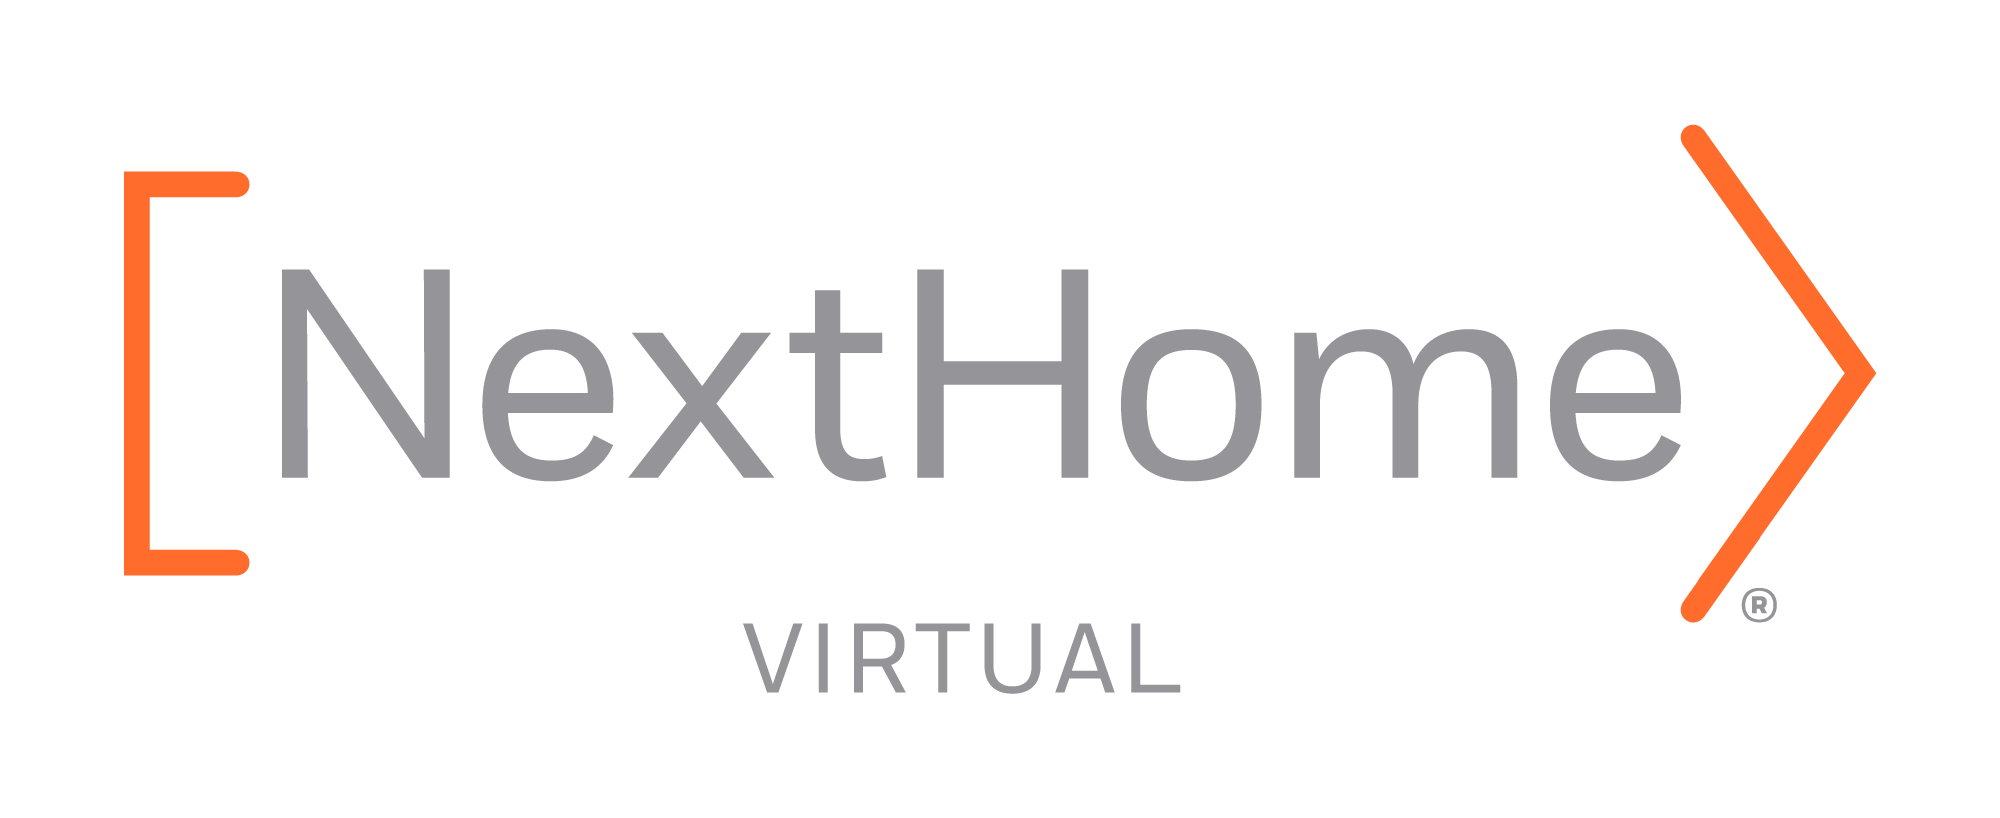 Next Home Virtual Logo